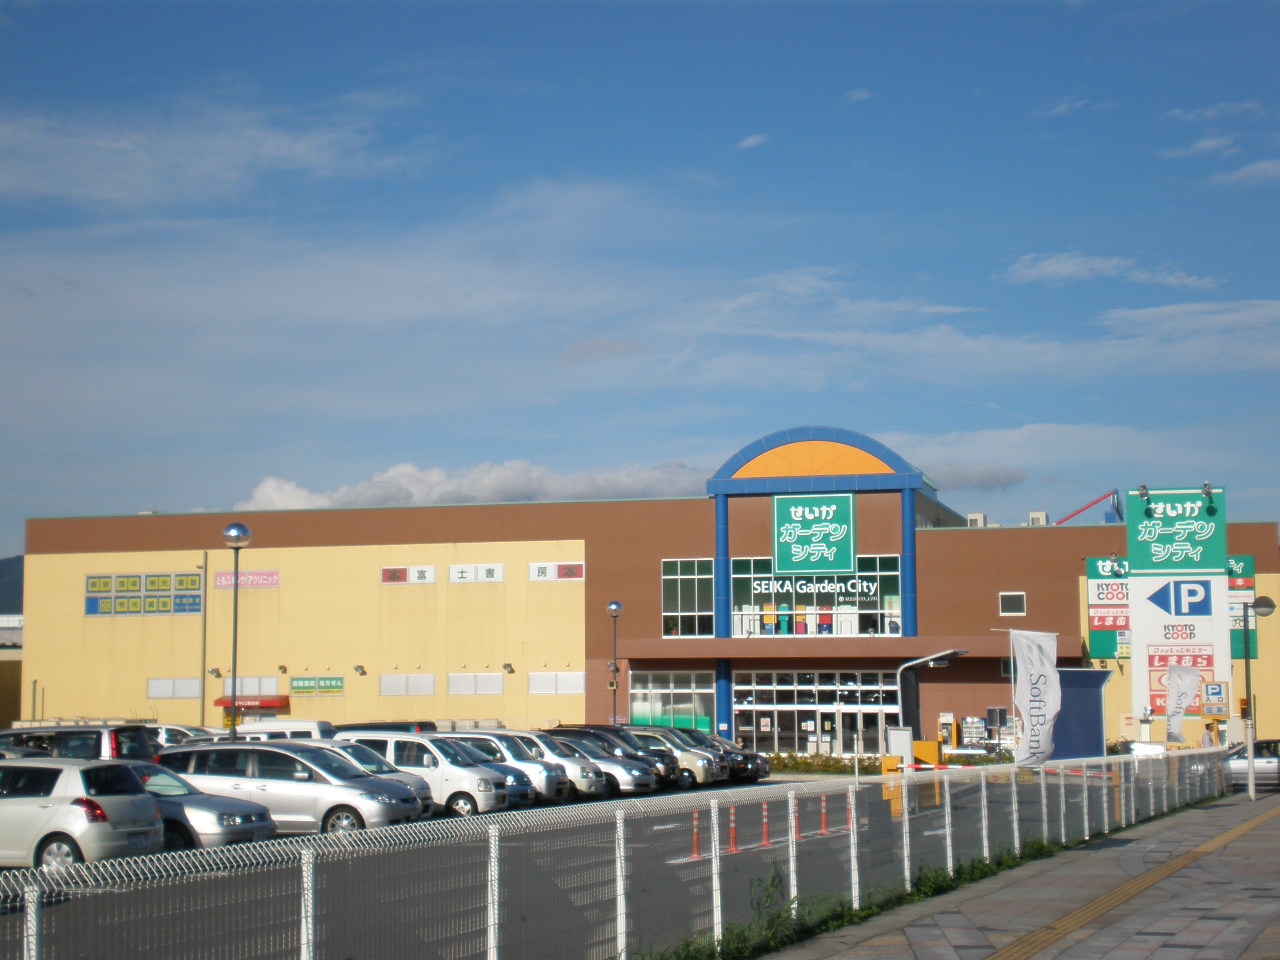 Shopping centre. 352m until the outcome Garden City (shopping center)